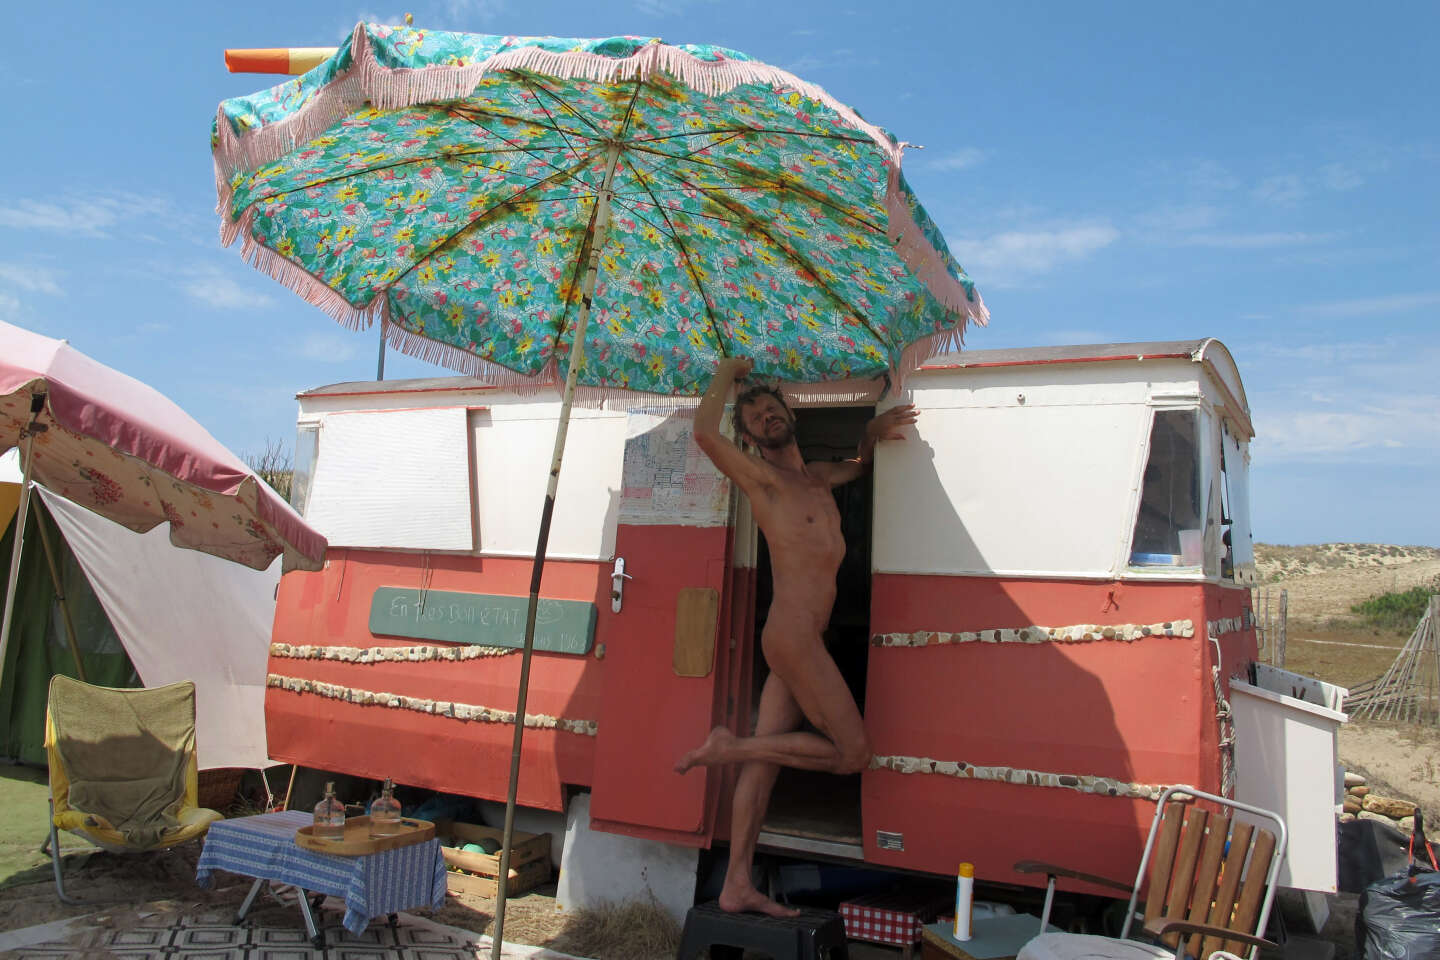 Au camp naturiste de Montalivet, l’ultime bataille des nus propriétaires, menacés d’expulsion